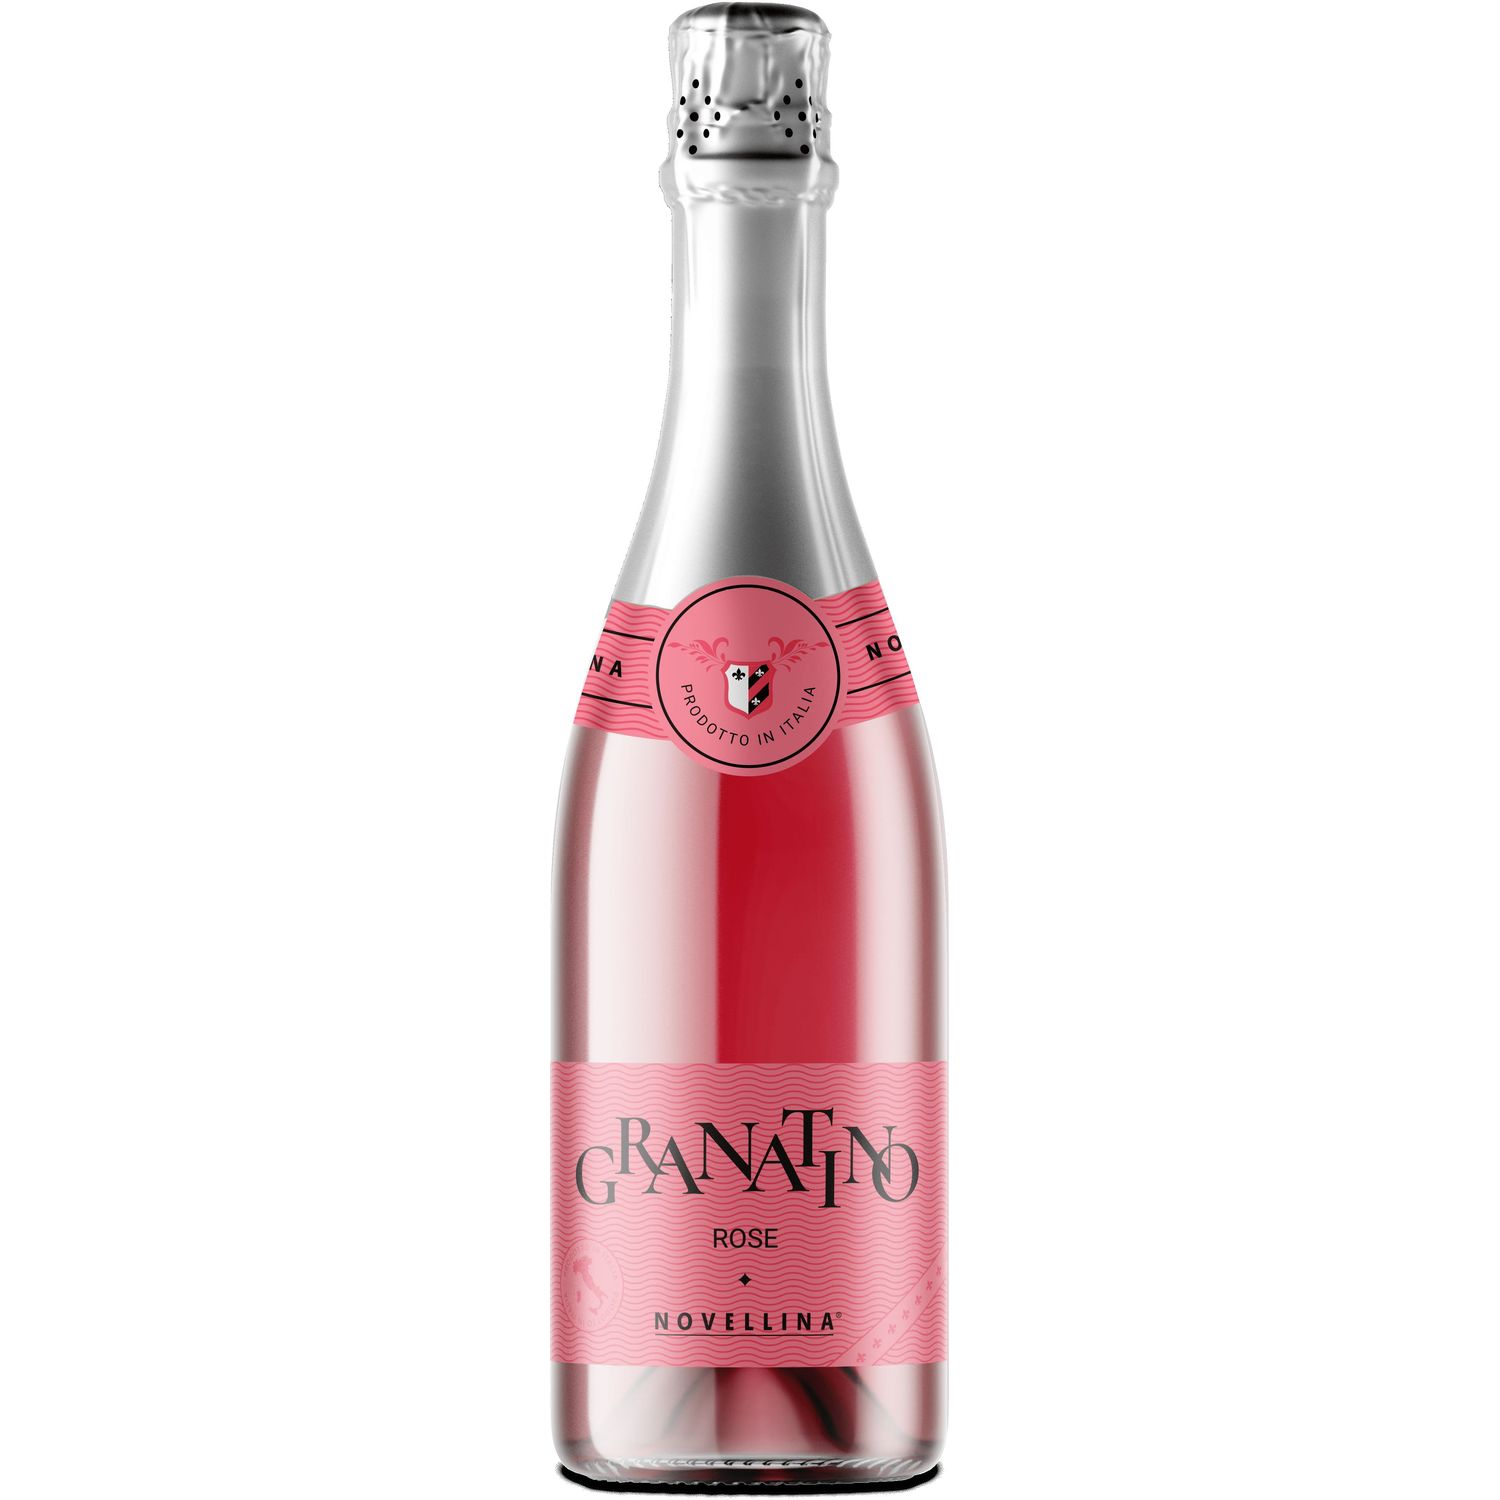 Напиток вина Granatino Rose Novellina 7% 0.75 л - фото 1